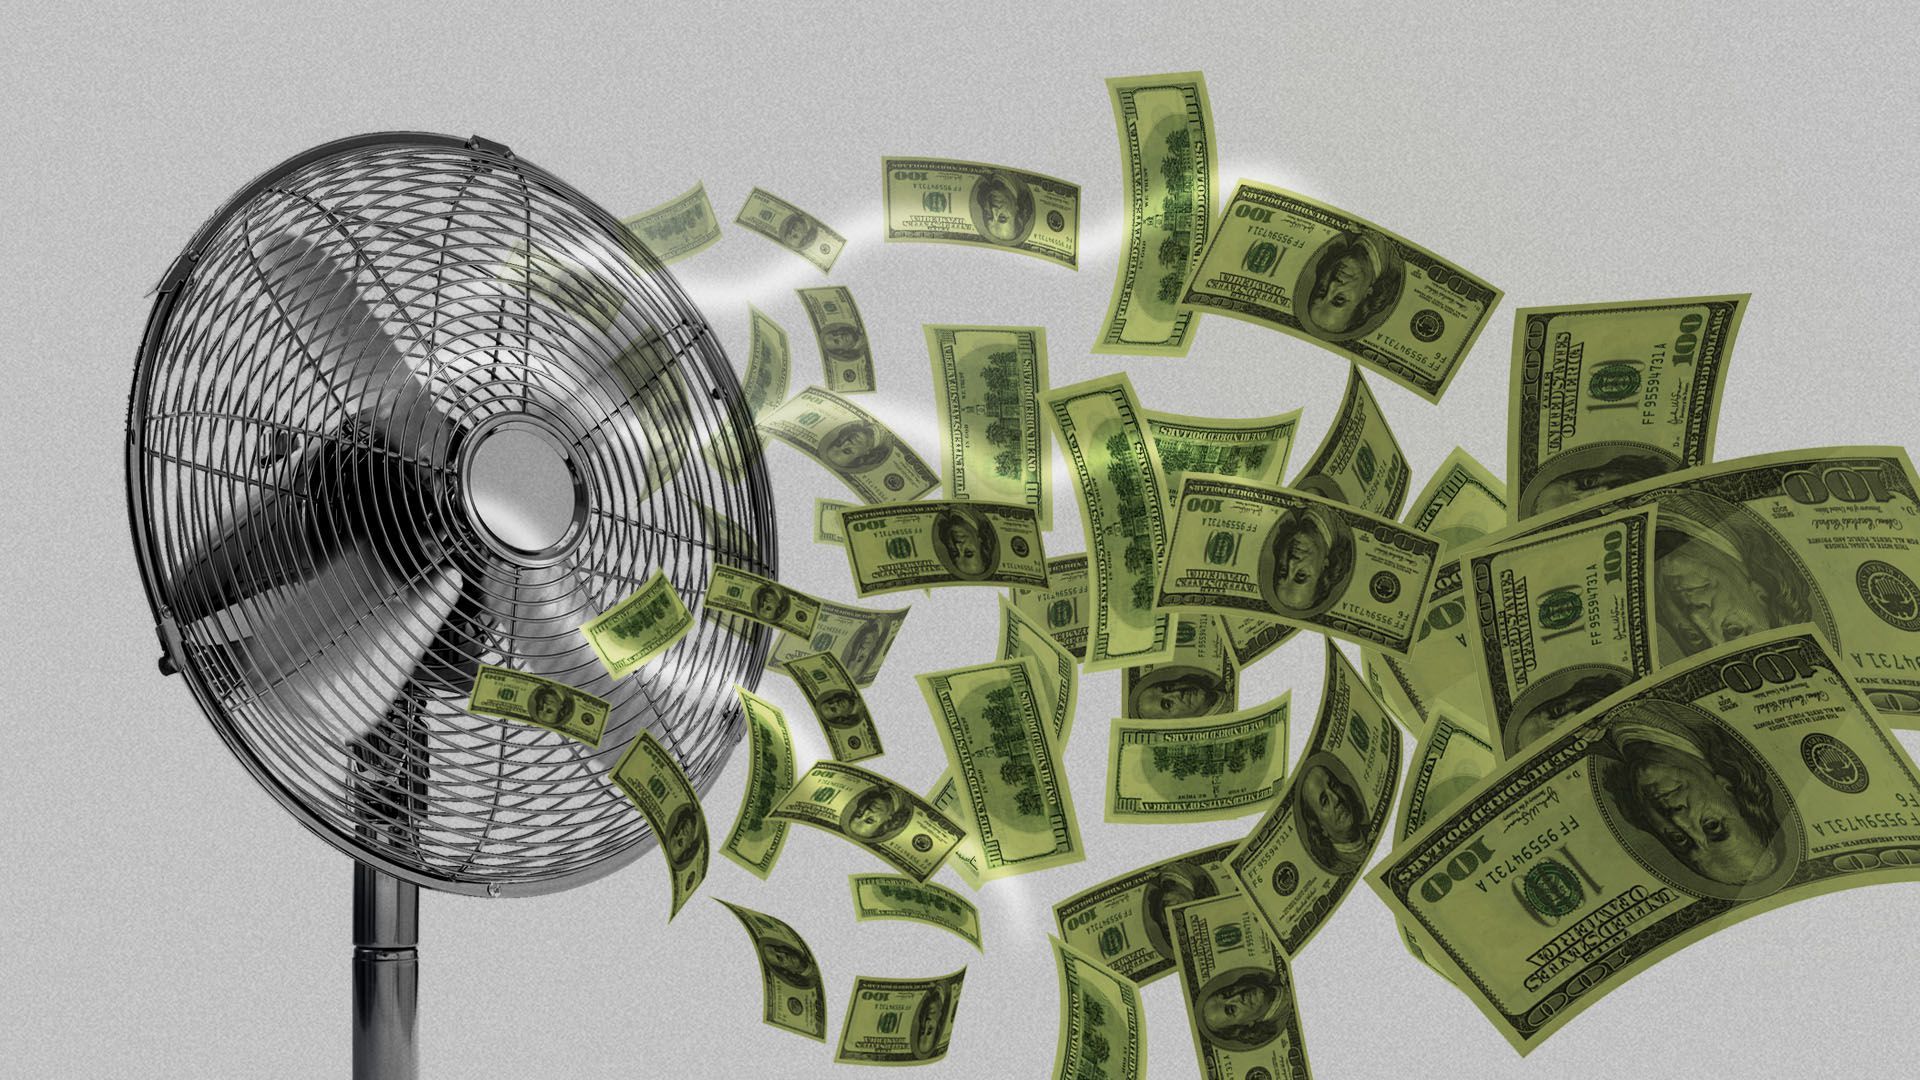 Illustration of a fan blowing cash